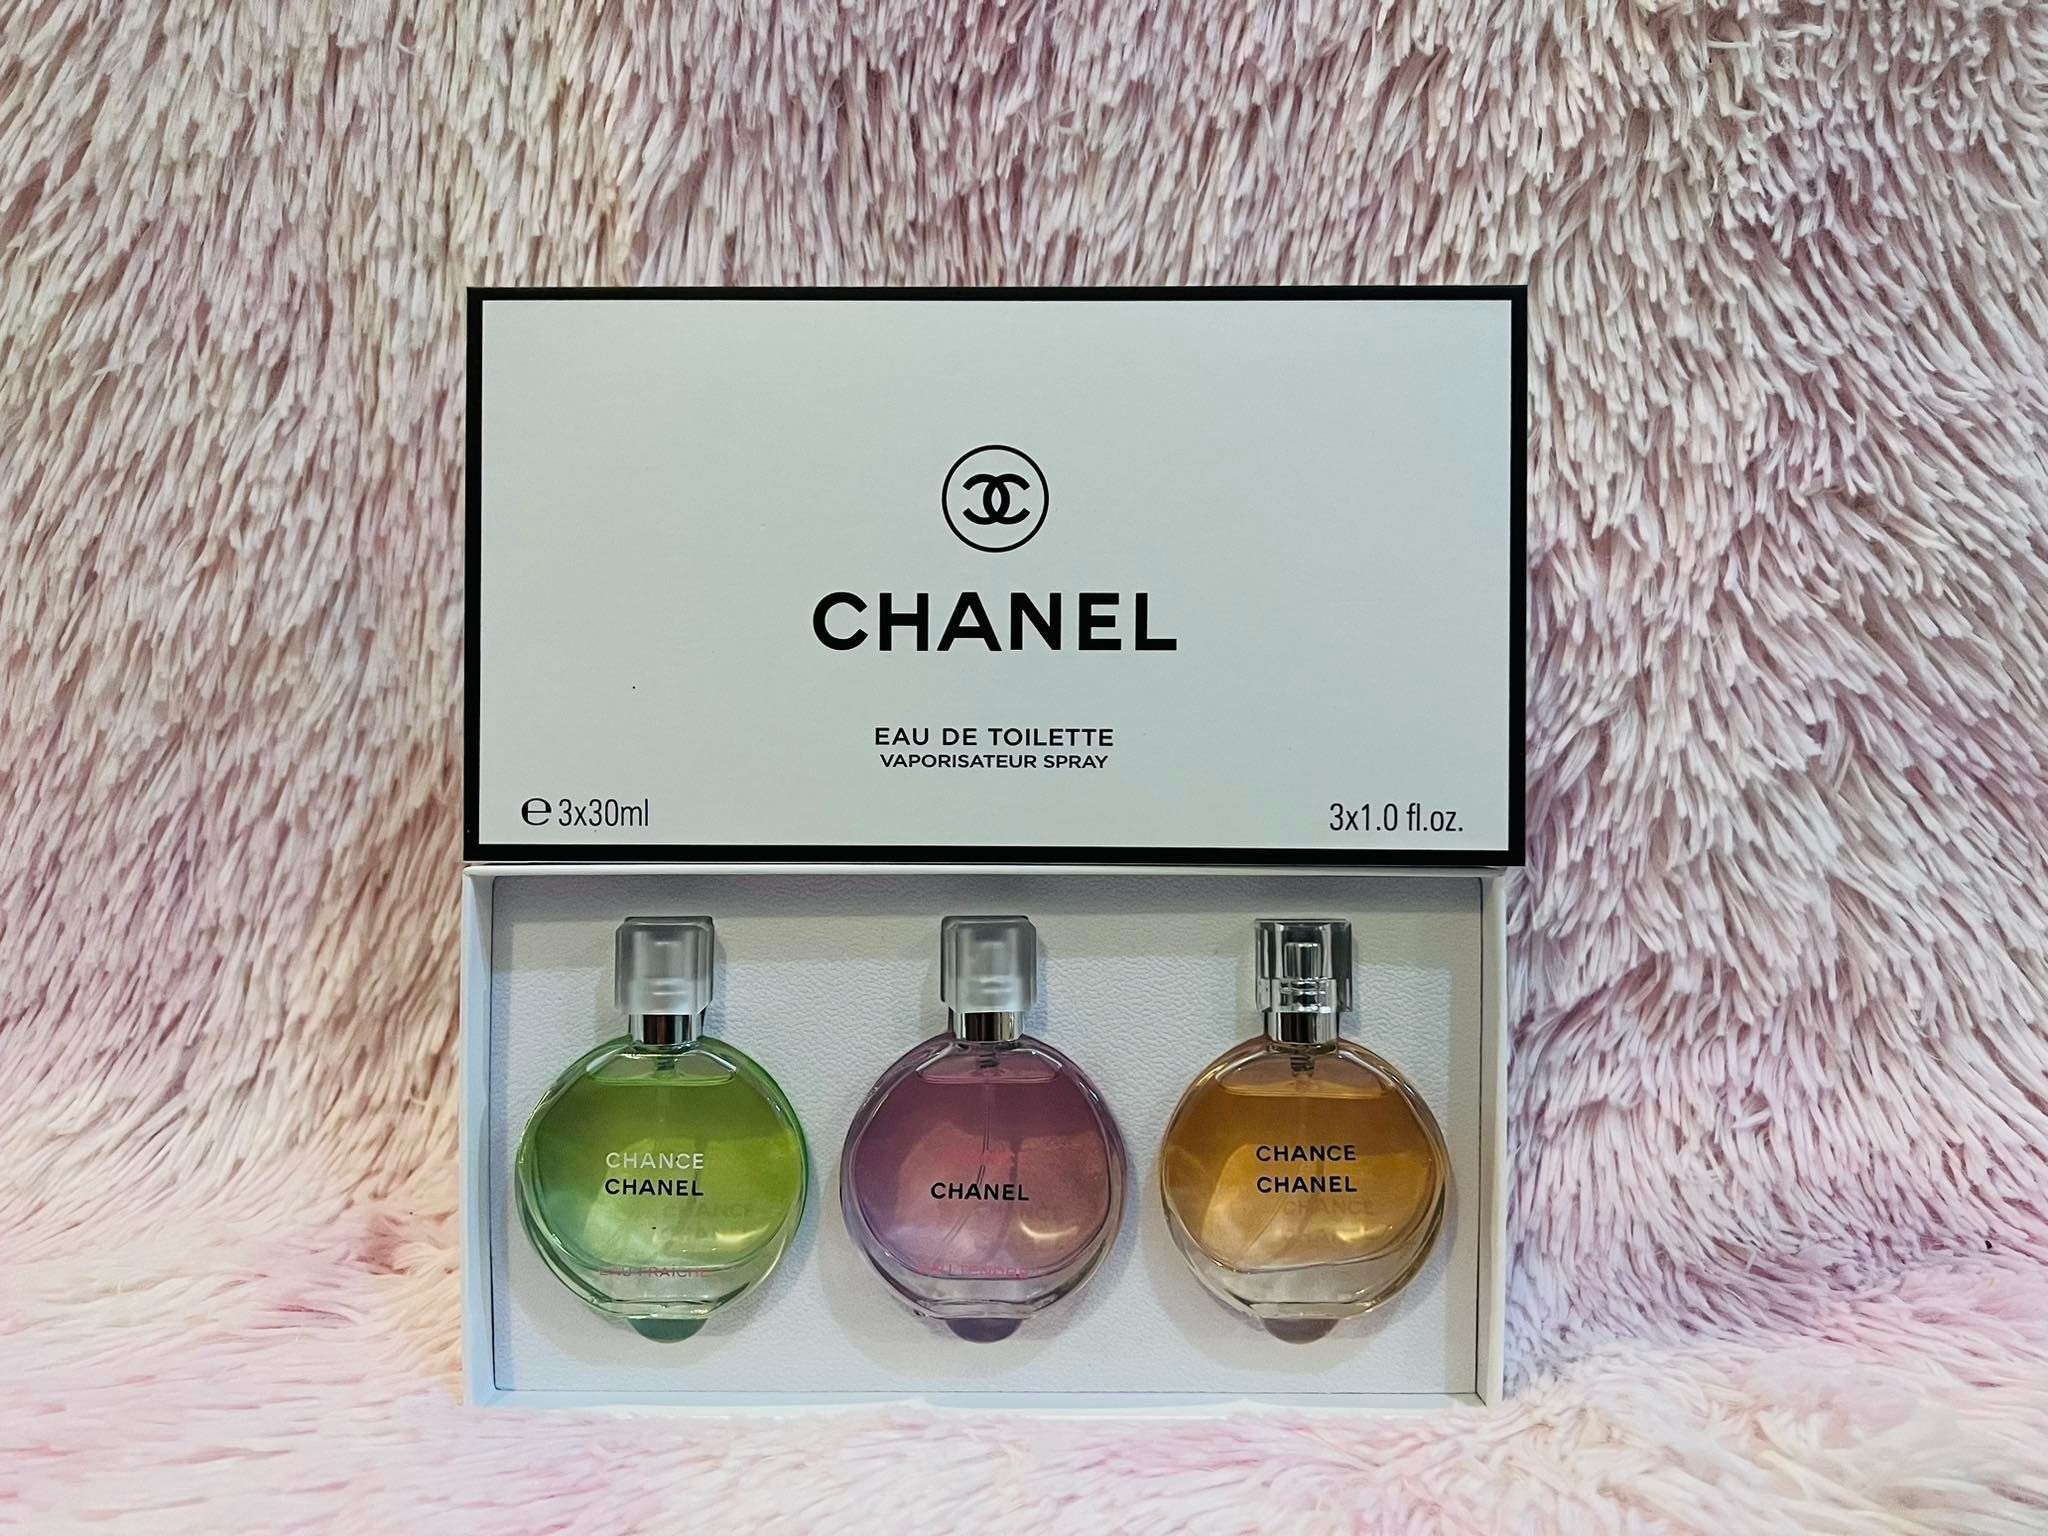 Chance Perfume Set of 3 Mini Size Bottle 30ml each Bottle Eau De Toilette  Oil Based Perfumes long lasting scent Authentic Tester